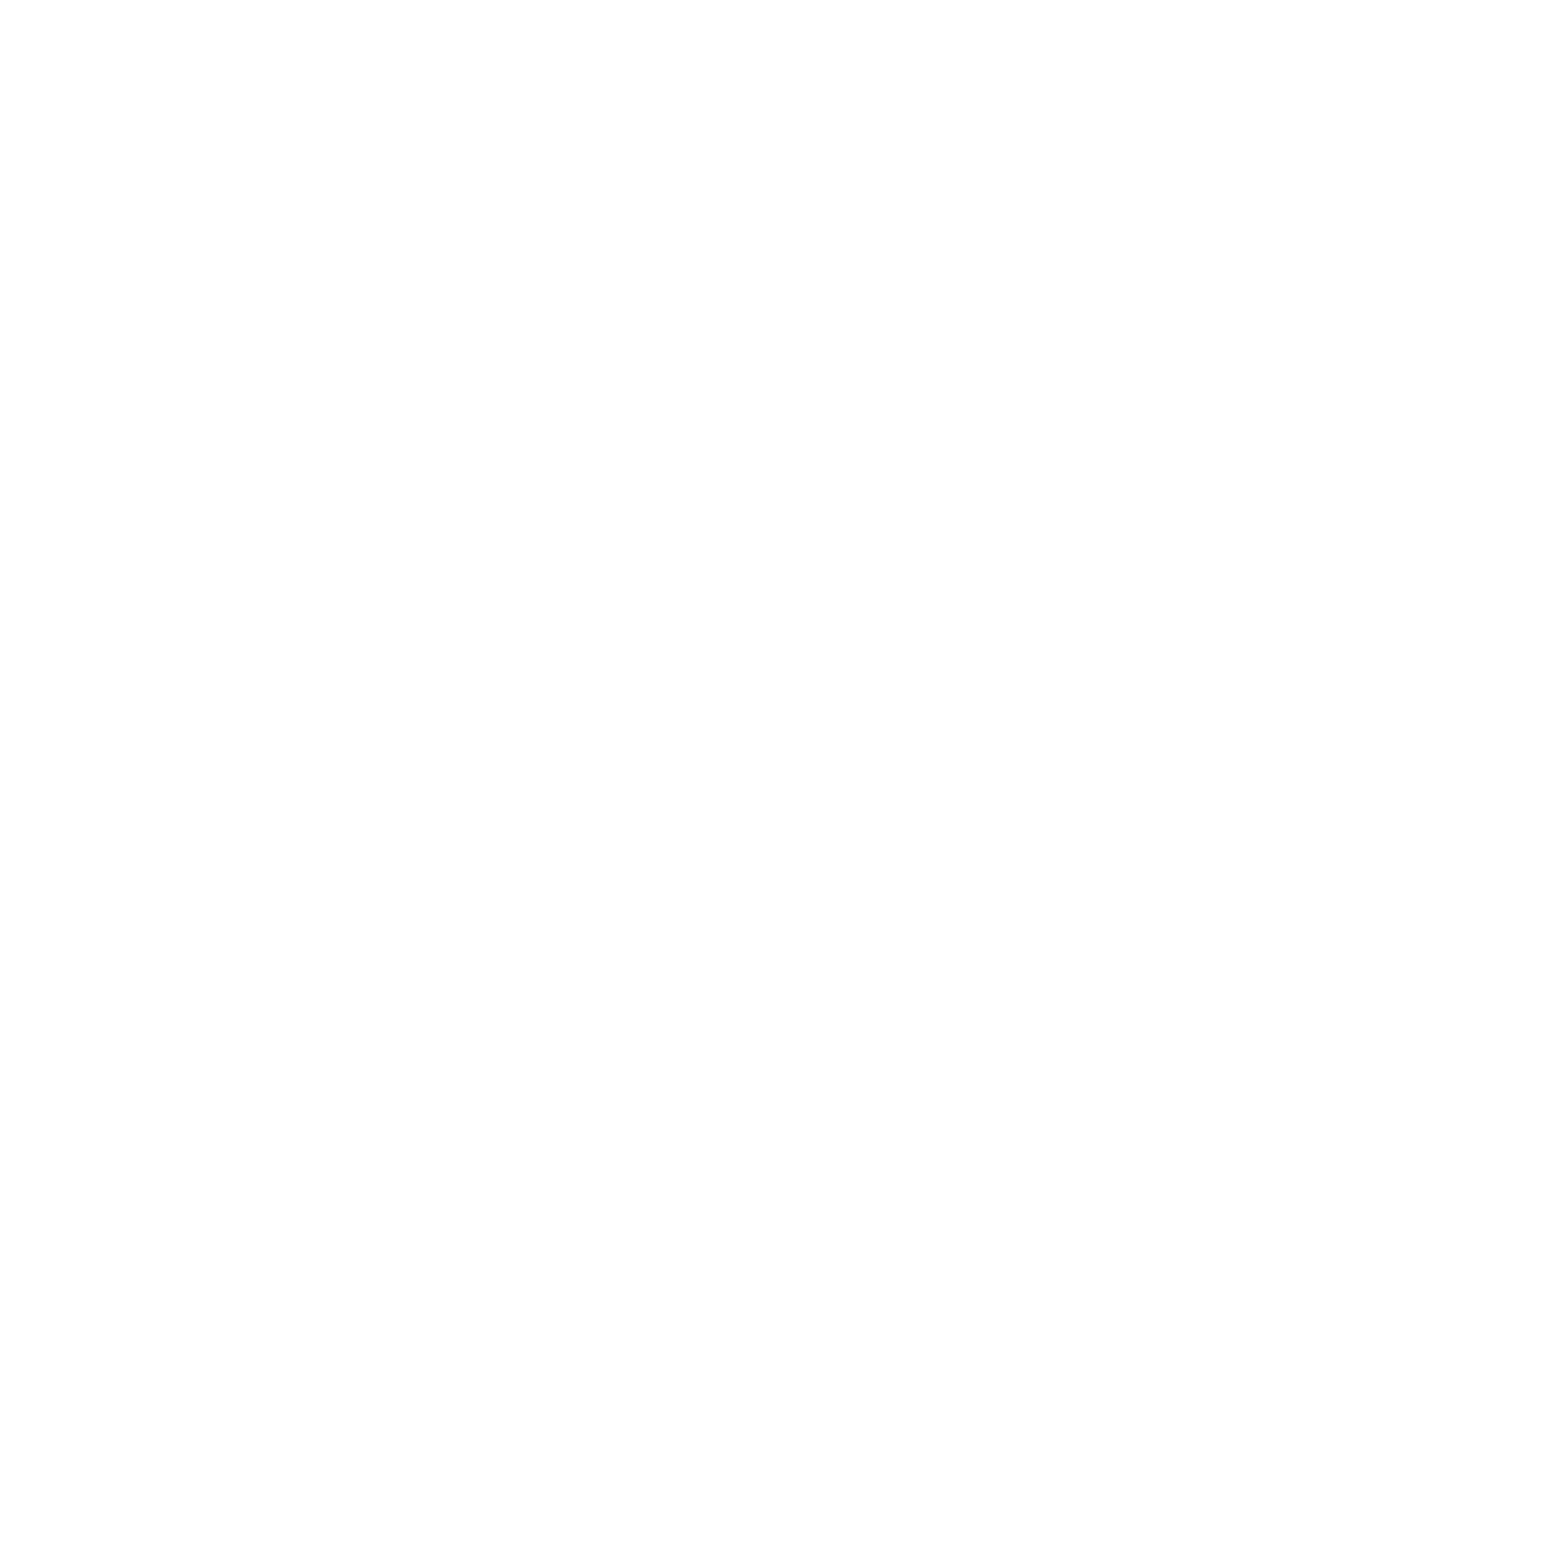 TOTVS logo for dark backgrounds (transparent PNG)